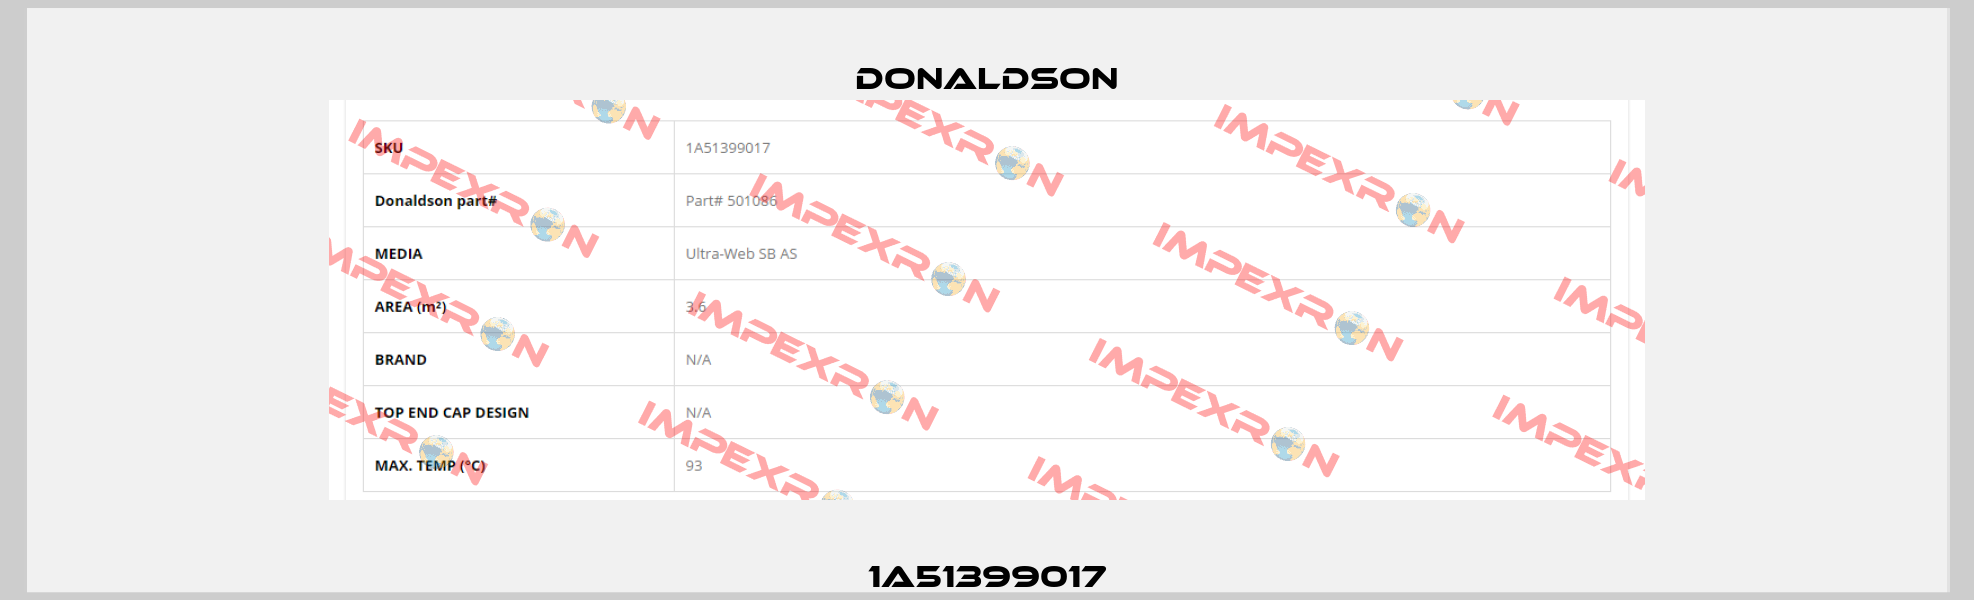 1A51399017 Donaldson